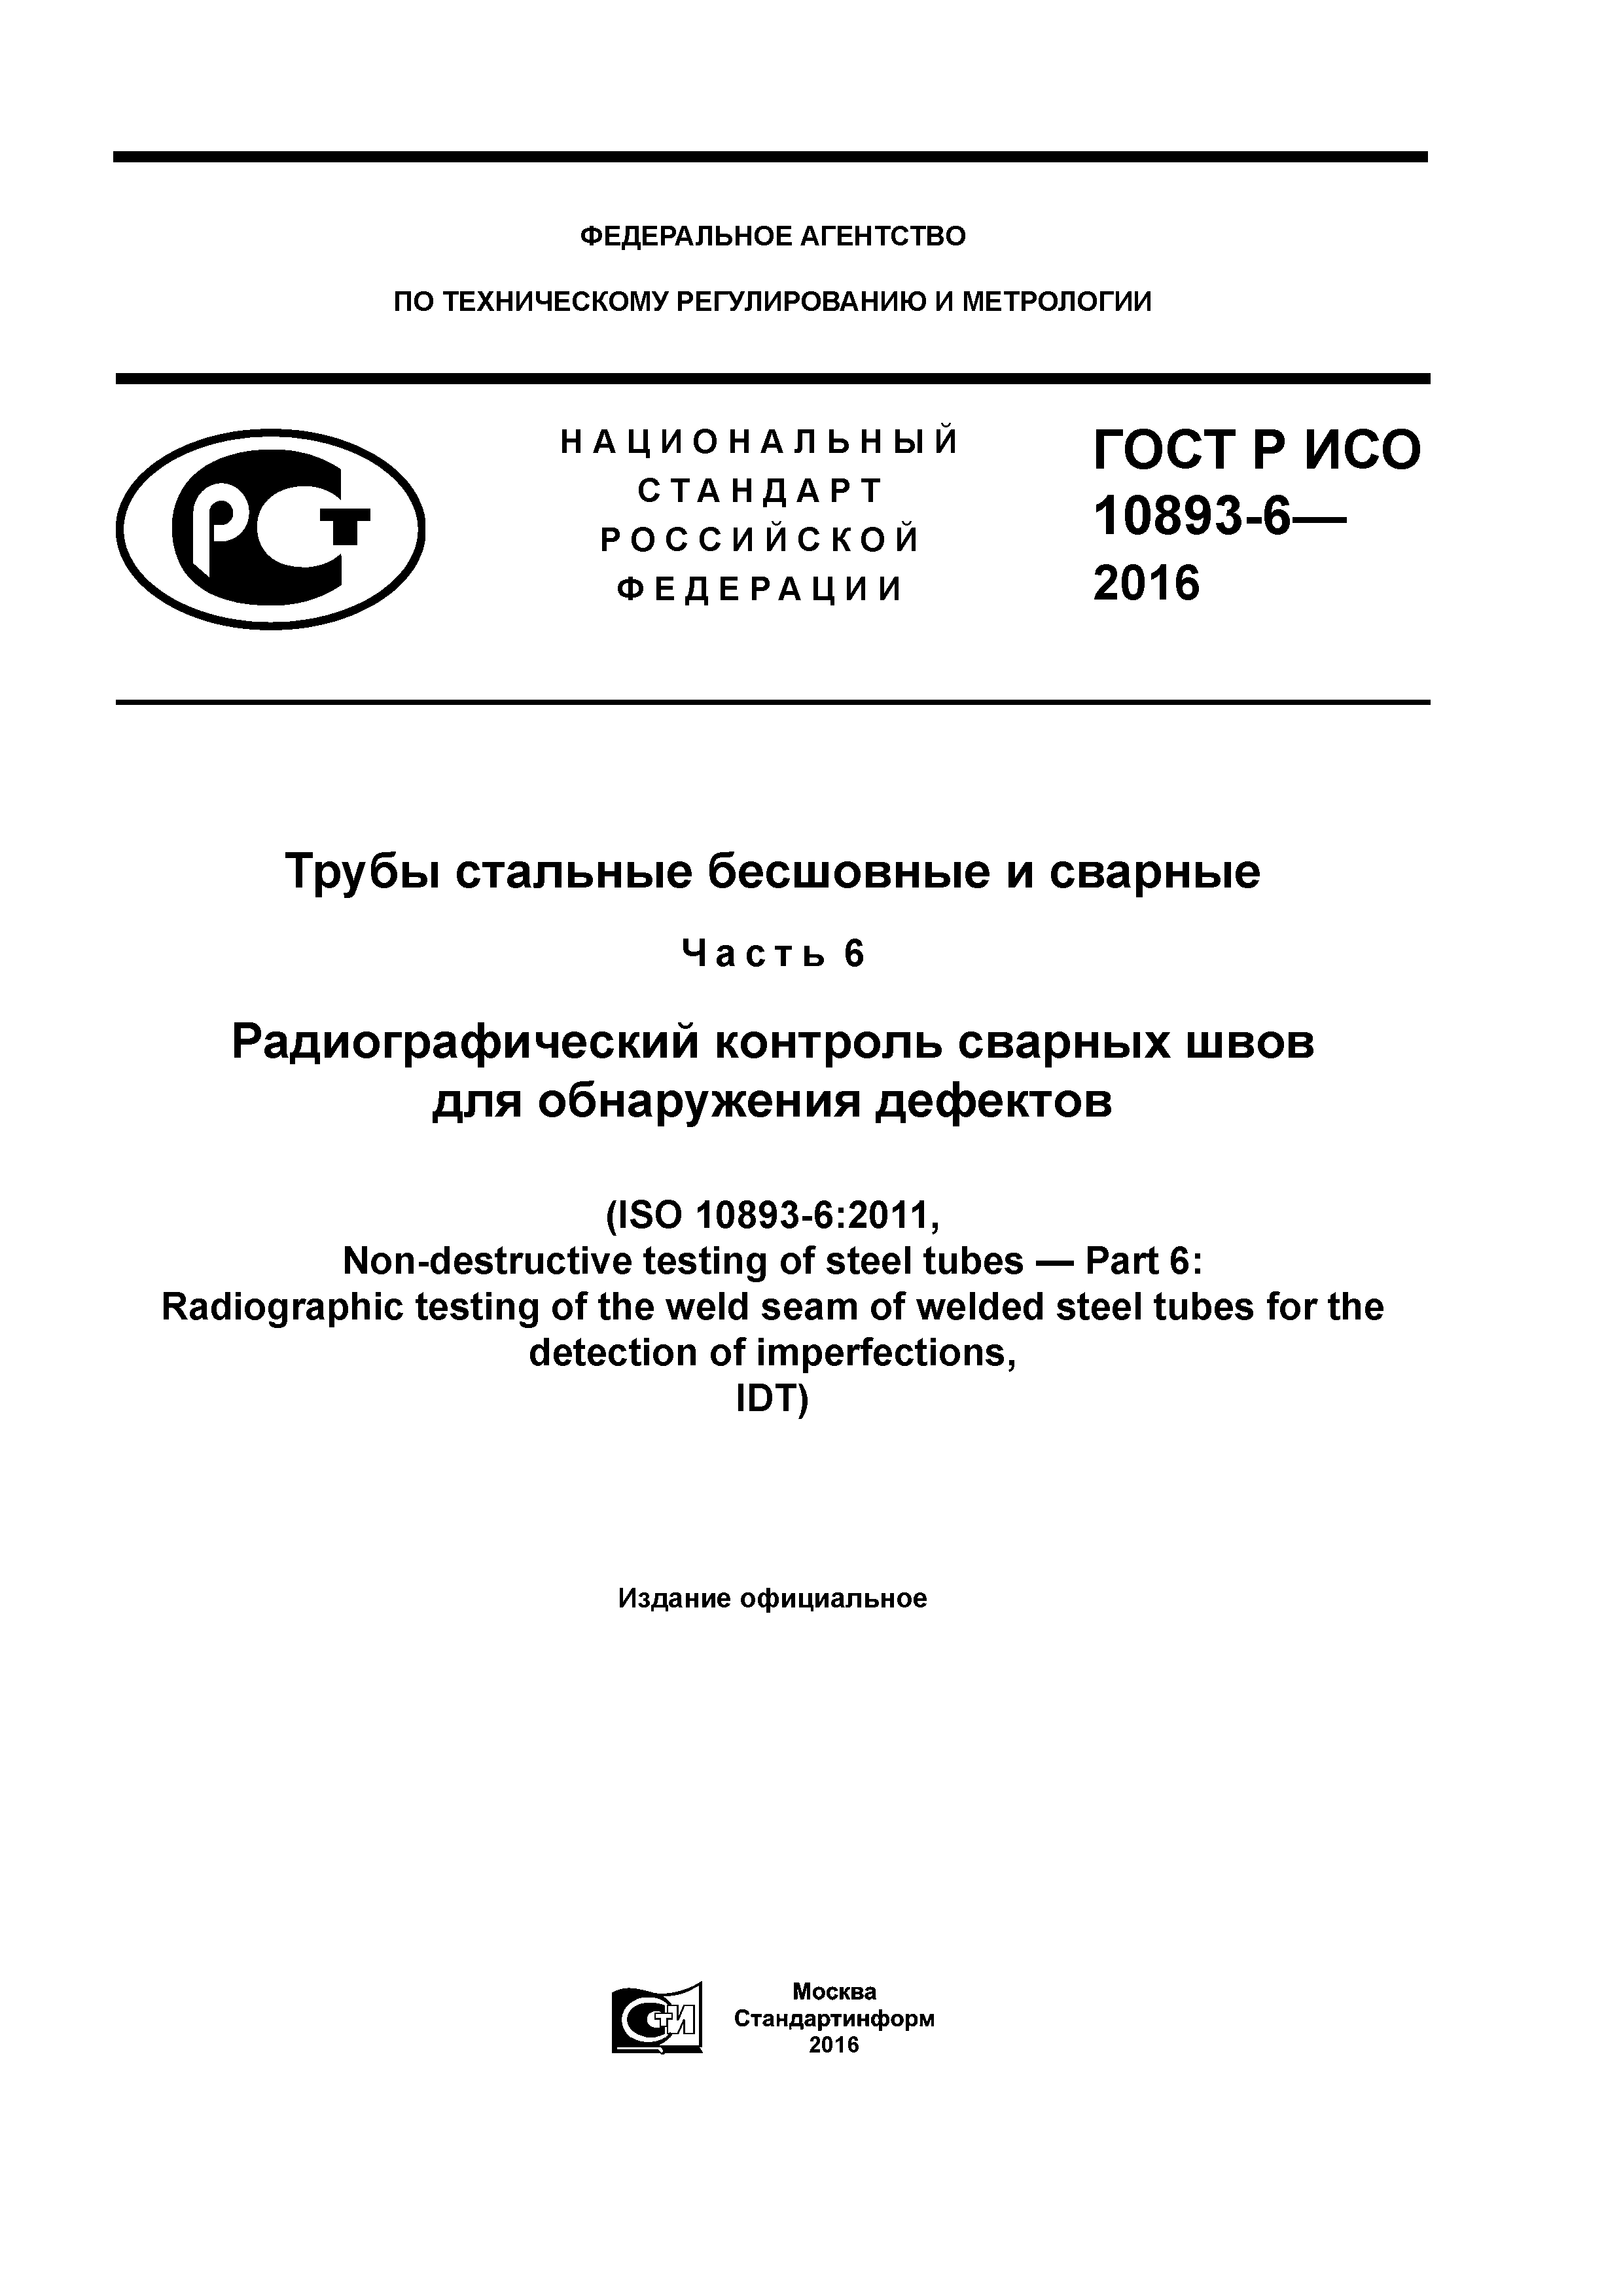 ГОСТ Р ИСО 10893-6-2016